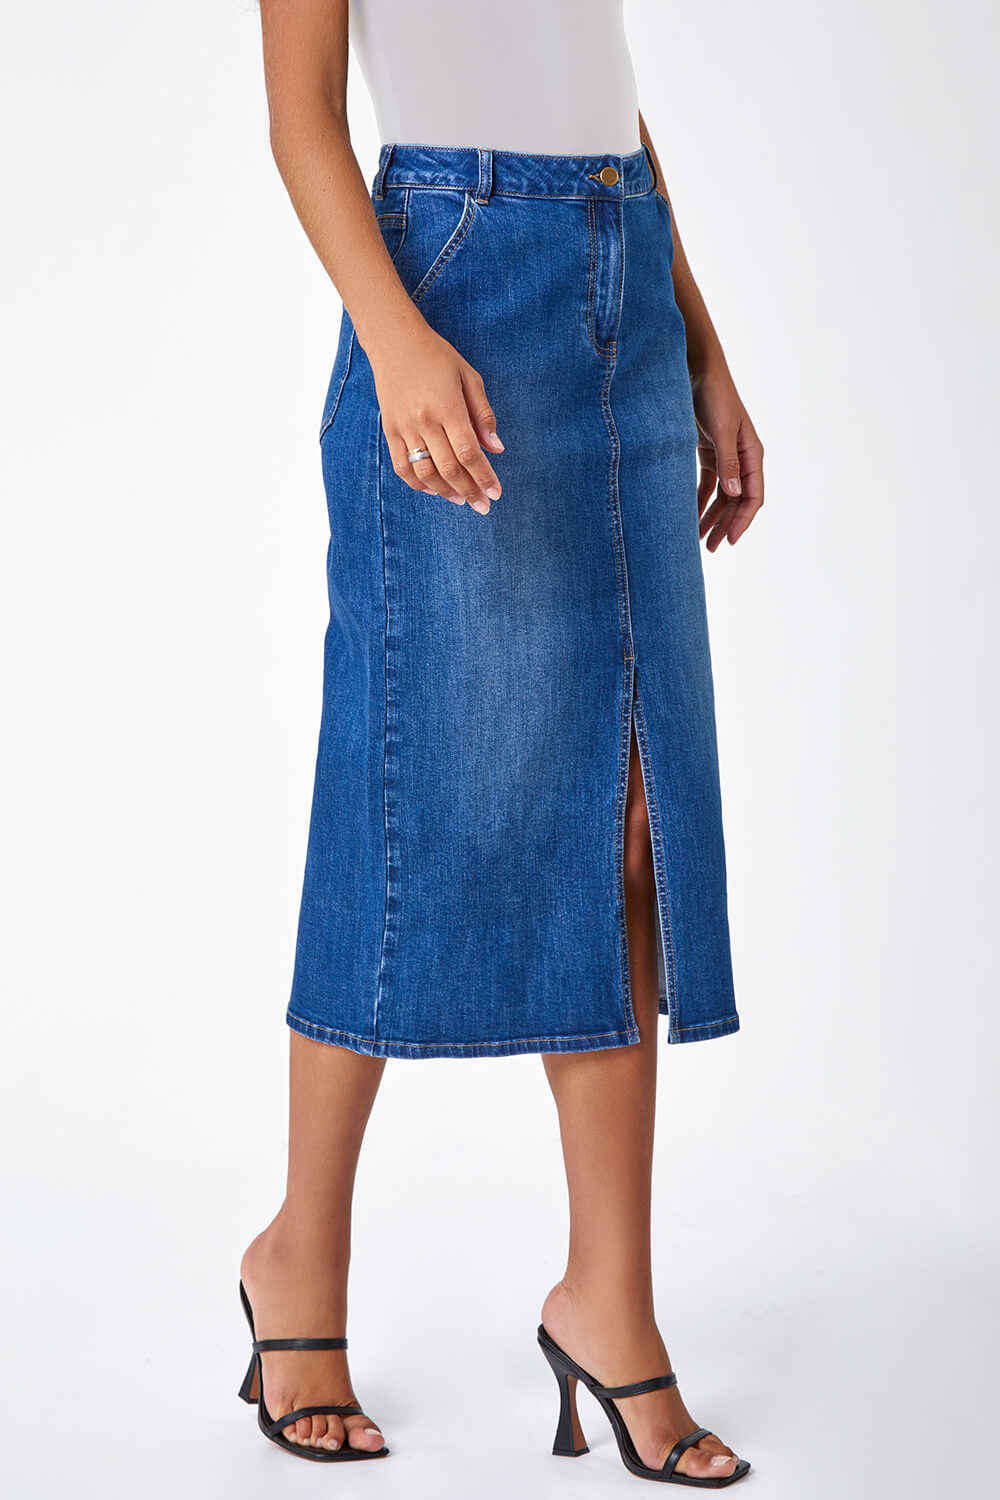 Women's High Waisted Denim Midi Skirt | Boohoo UK